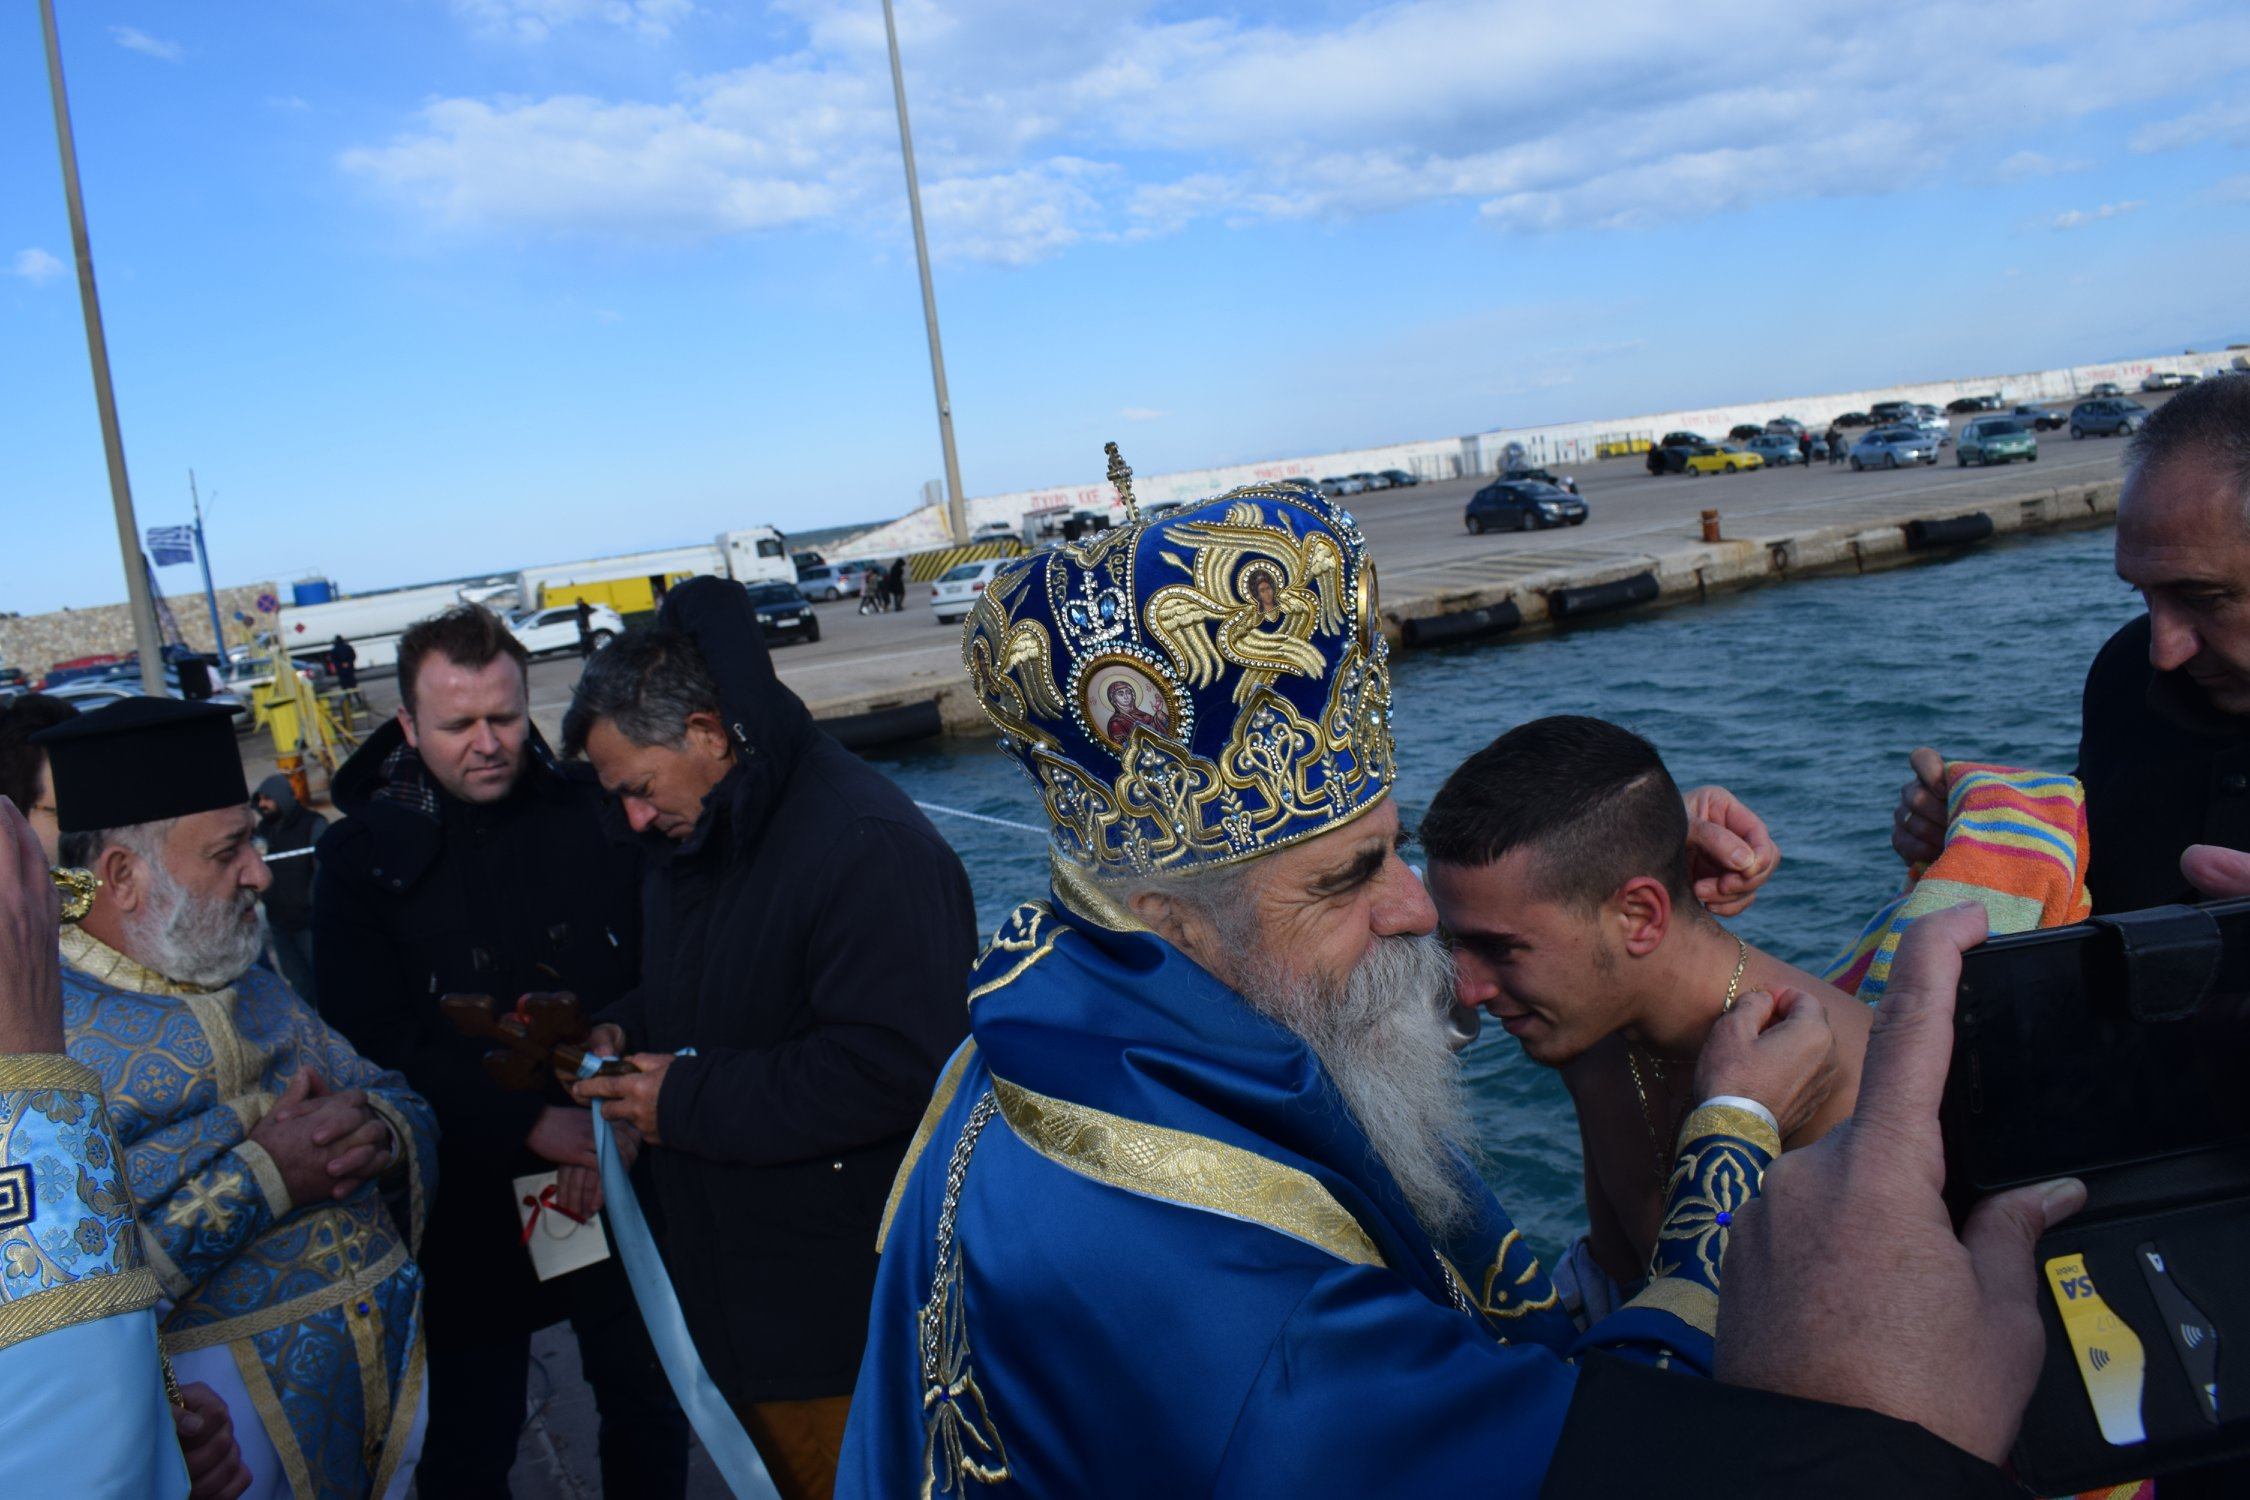 Κυλλήνη: Με επισημότητα και Θρησκευτική κατάνυξη εορτάστηκαν τα Άγια Θεοφάνεια 2020 στο λιμάνι της Κυλλήνης (Photos)